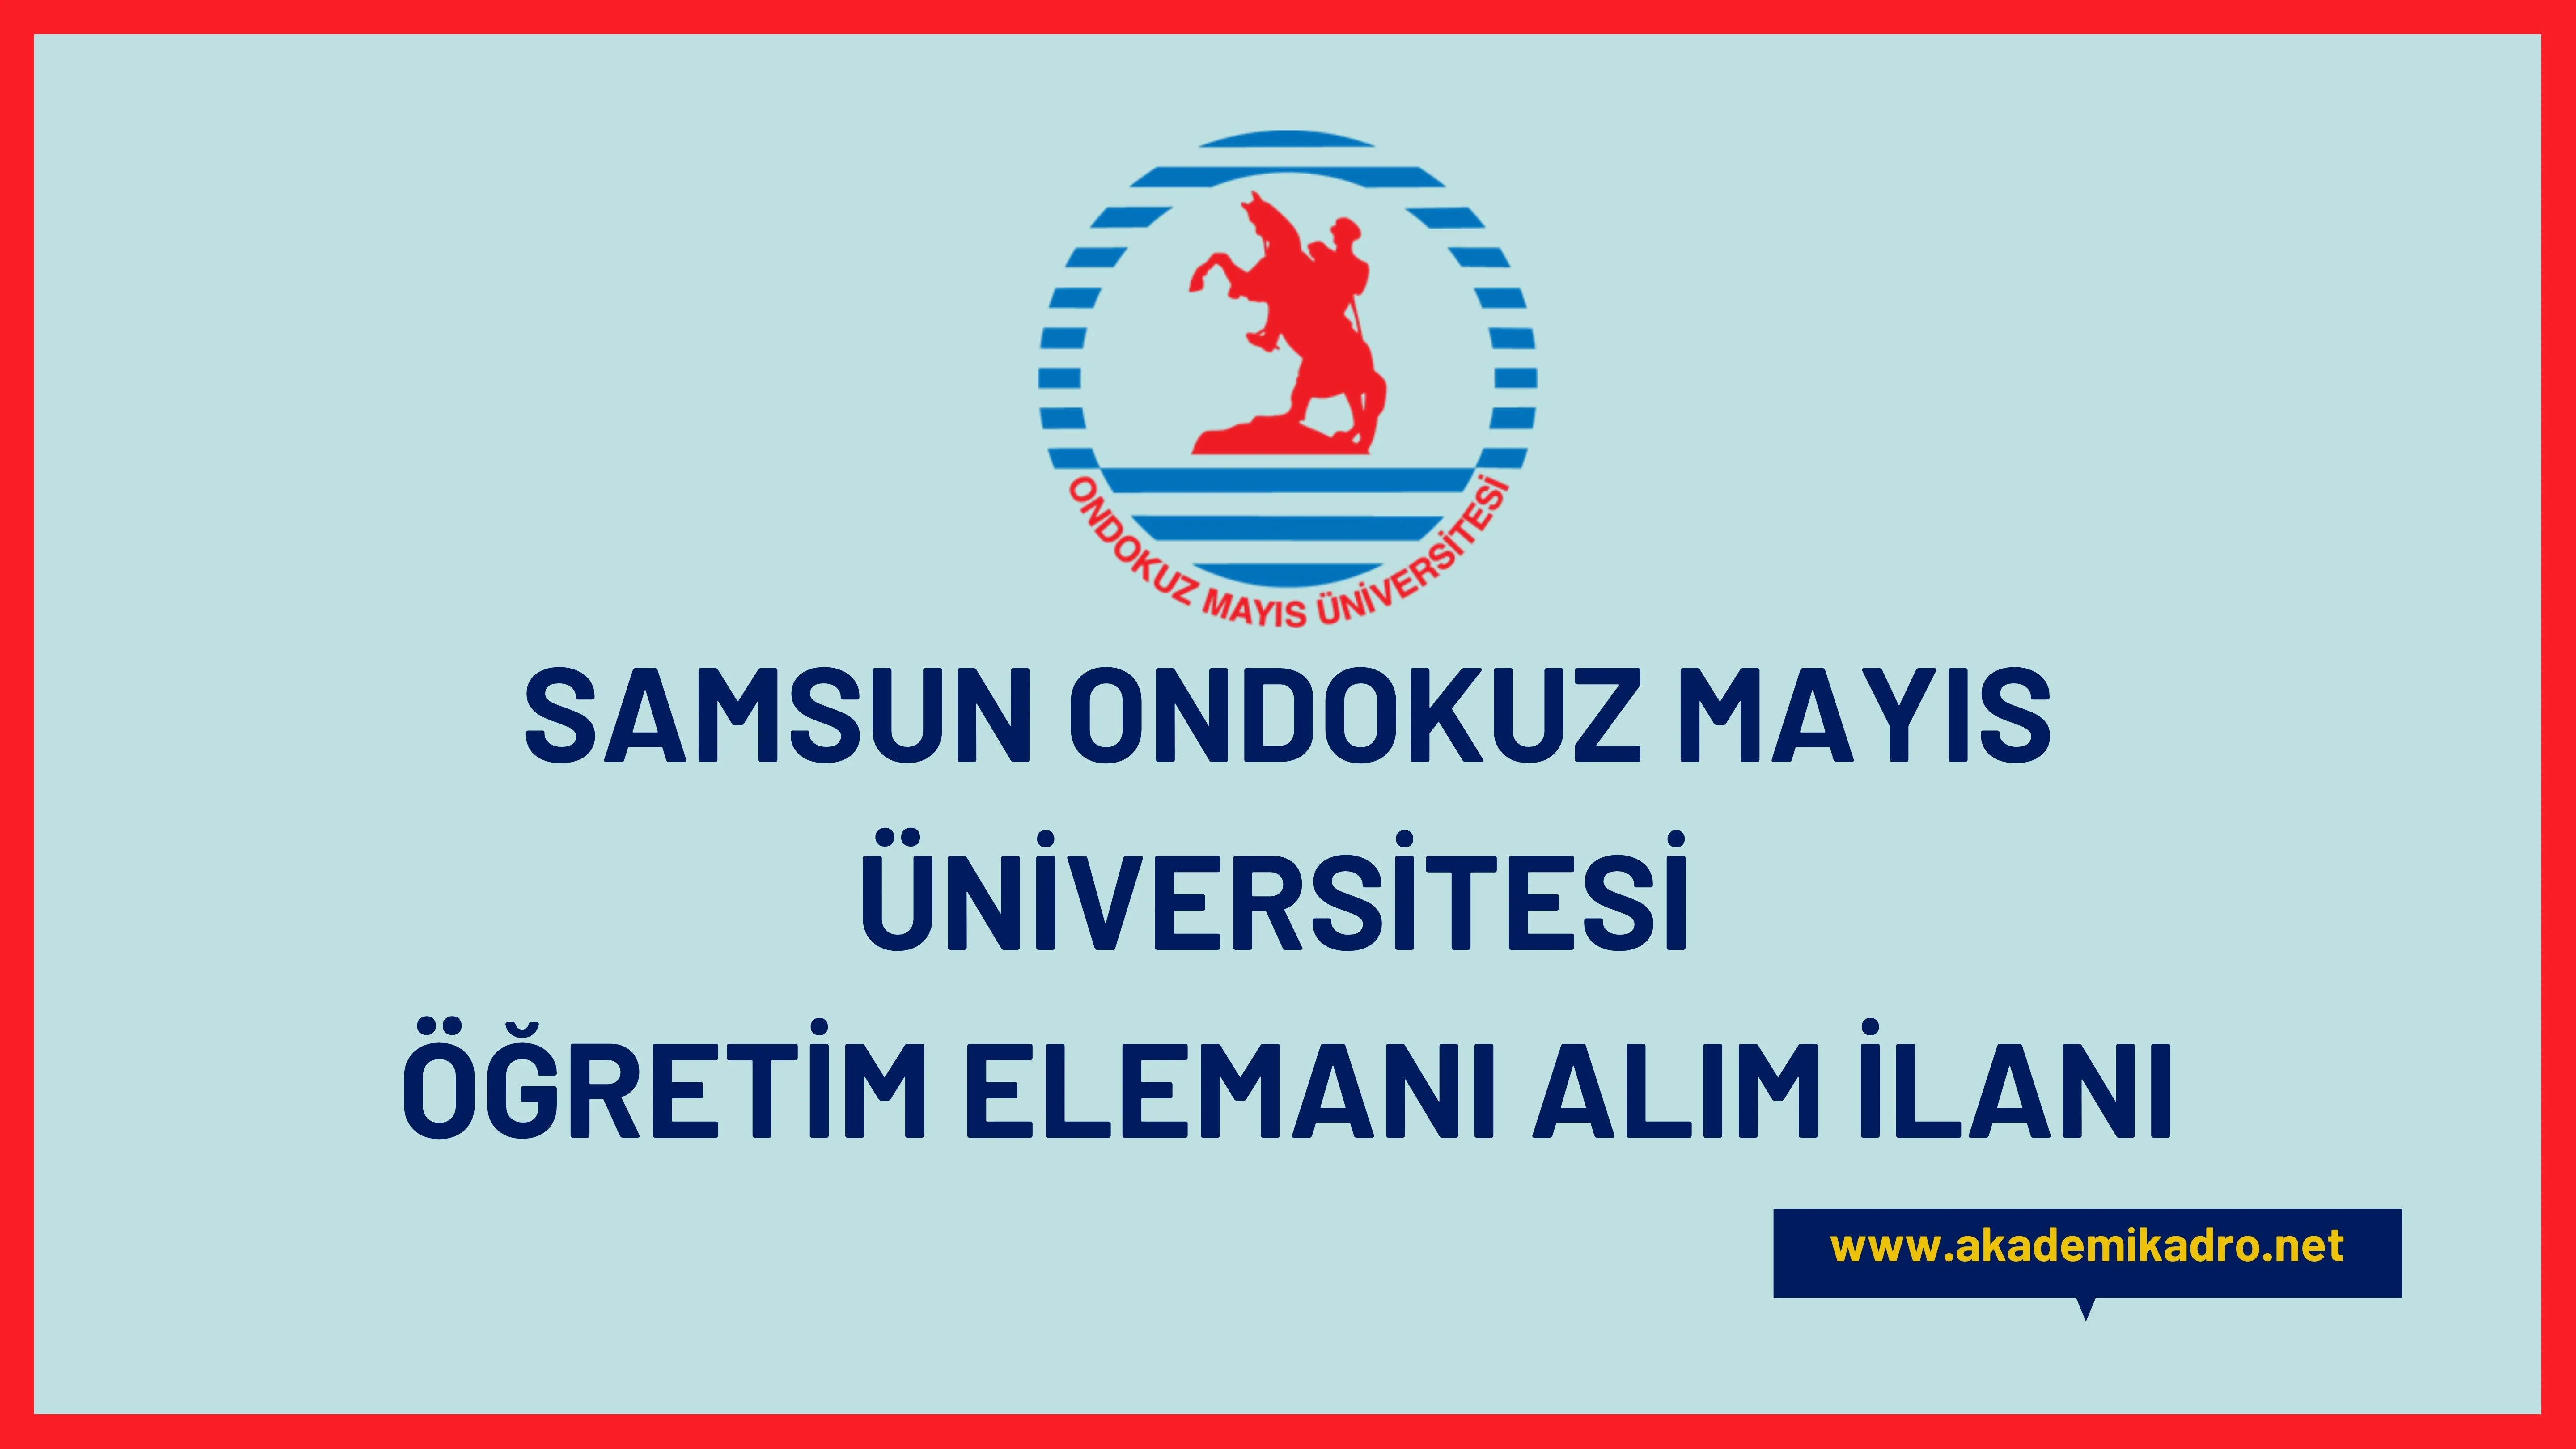 Ondokuz Mayıs Üniversitesi 6 Öğretim Görevlisi ve 3 Araştırma görevlisi alacaktır. Son başvuru tarihi 31 Ekim 2022